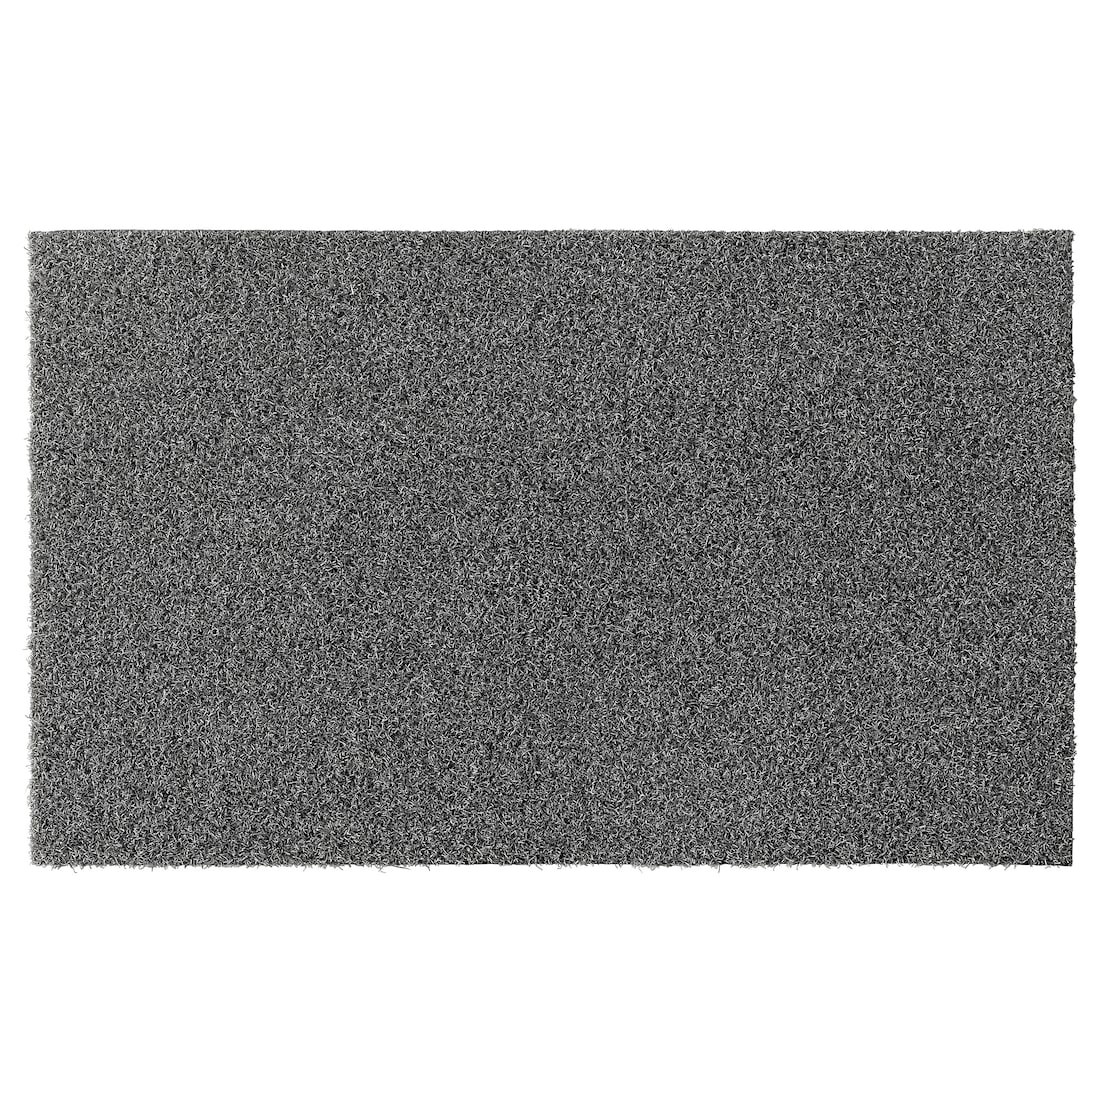 OPLEV ОПЛЕВ Придверный коврик, для дома / улицы серый, 50x80 см